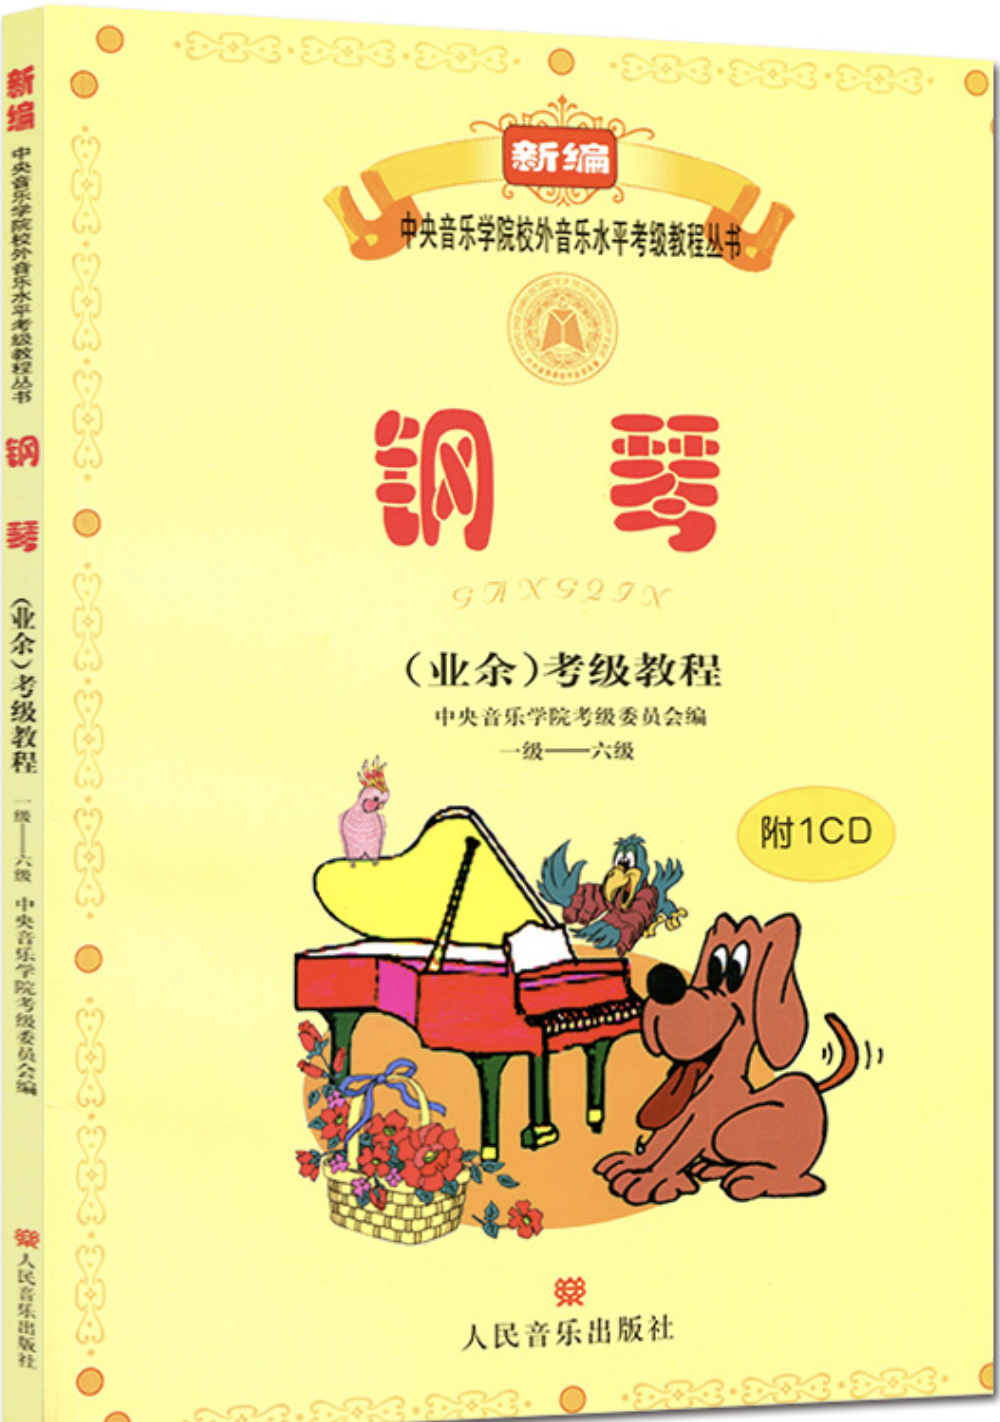 4级 复调乐曲 小步舞曲-钢琴谱